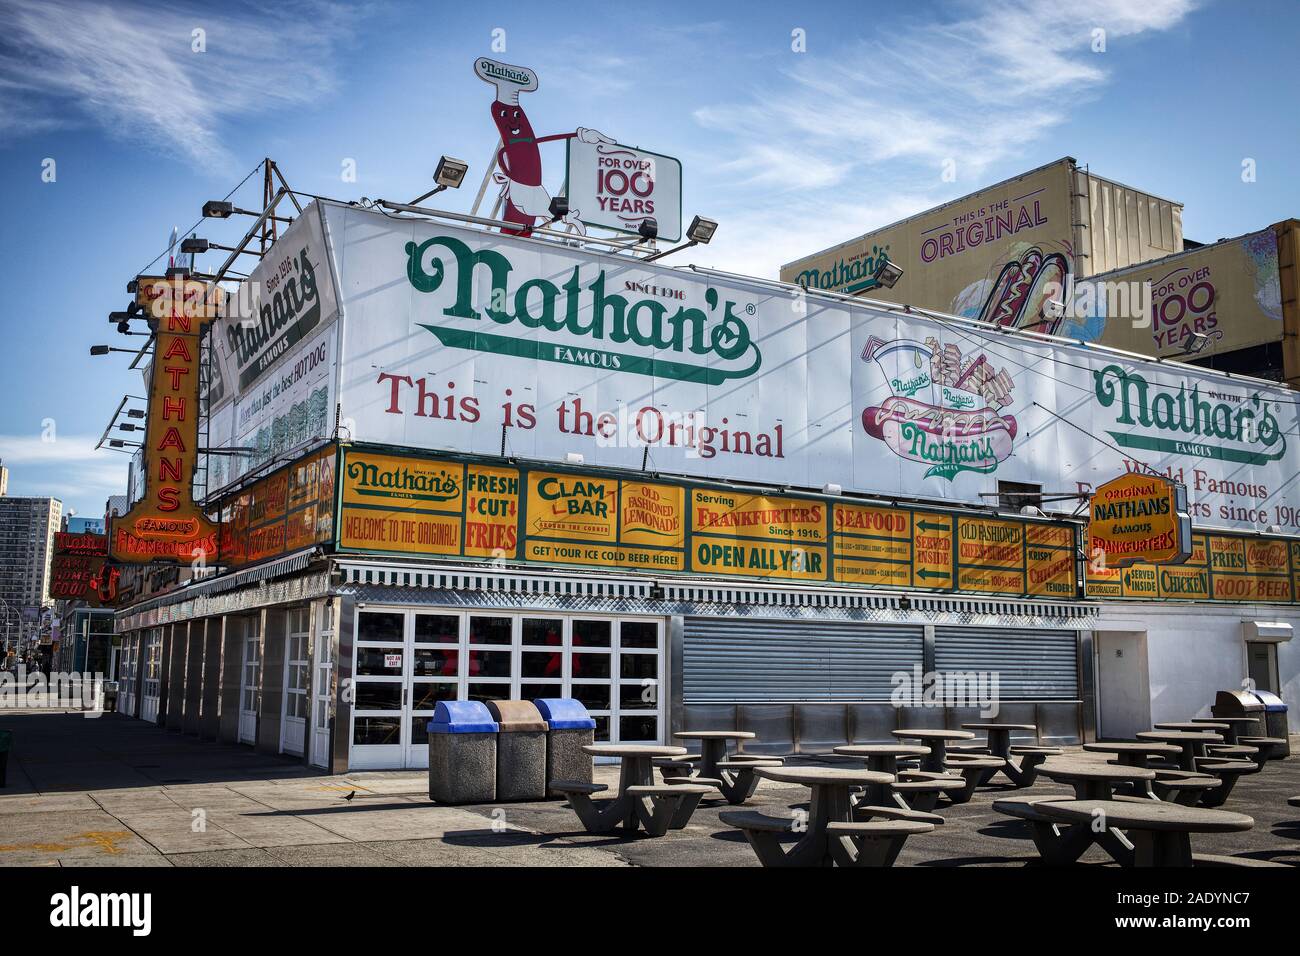 Nueva York, NY - Novermber 18, 2019: Nathans hot dog famosa tienda ubicada en Coney Island en Brooklyn, NY Foto de stock